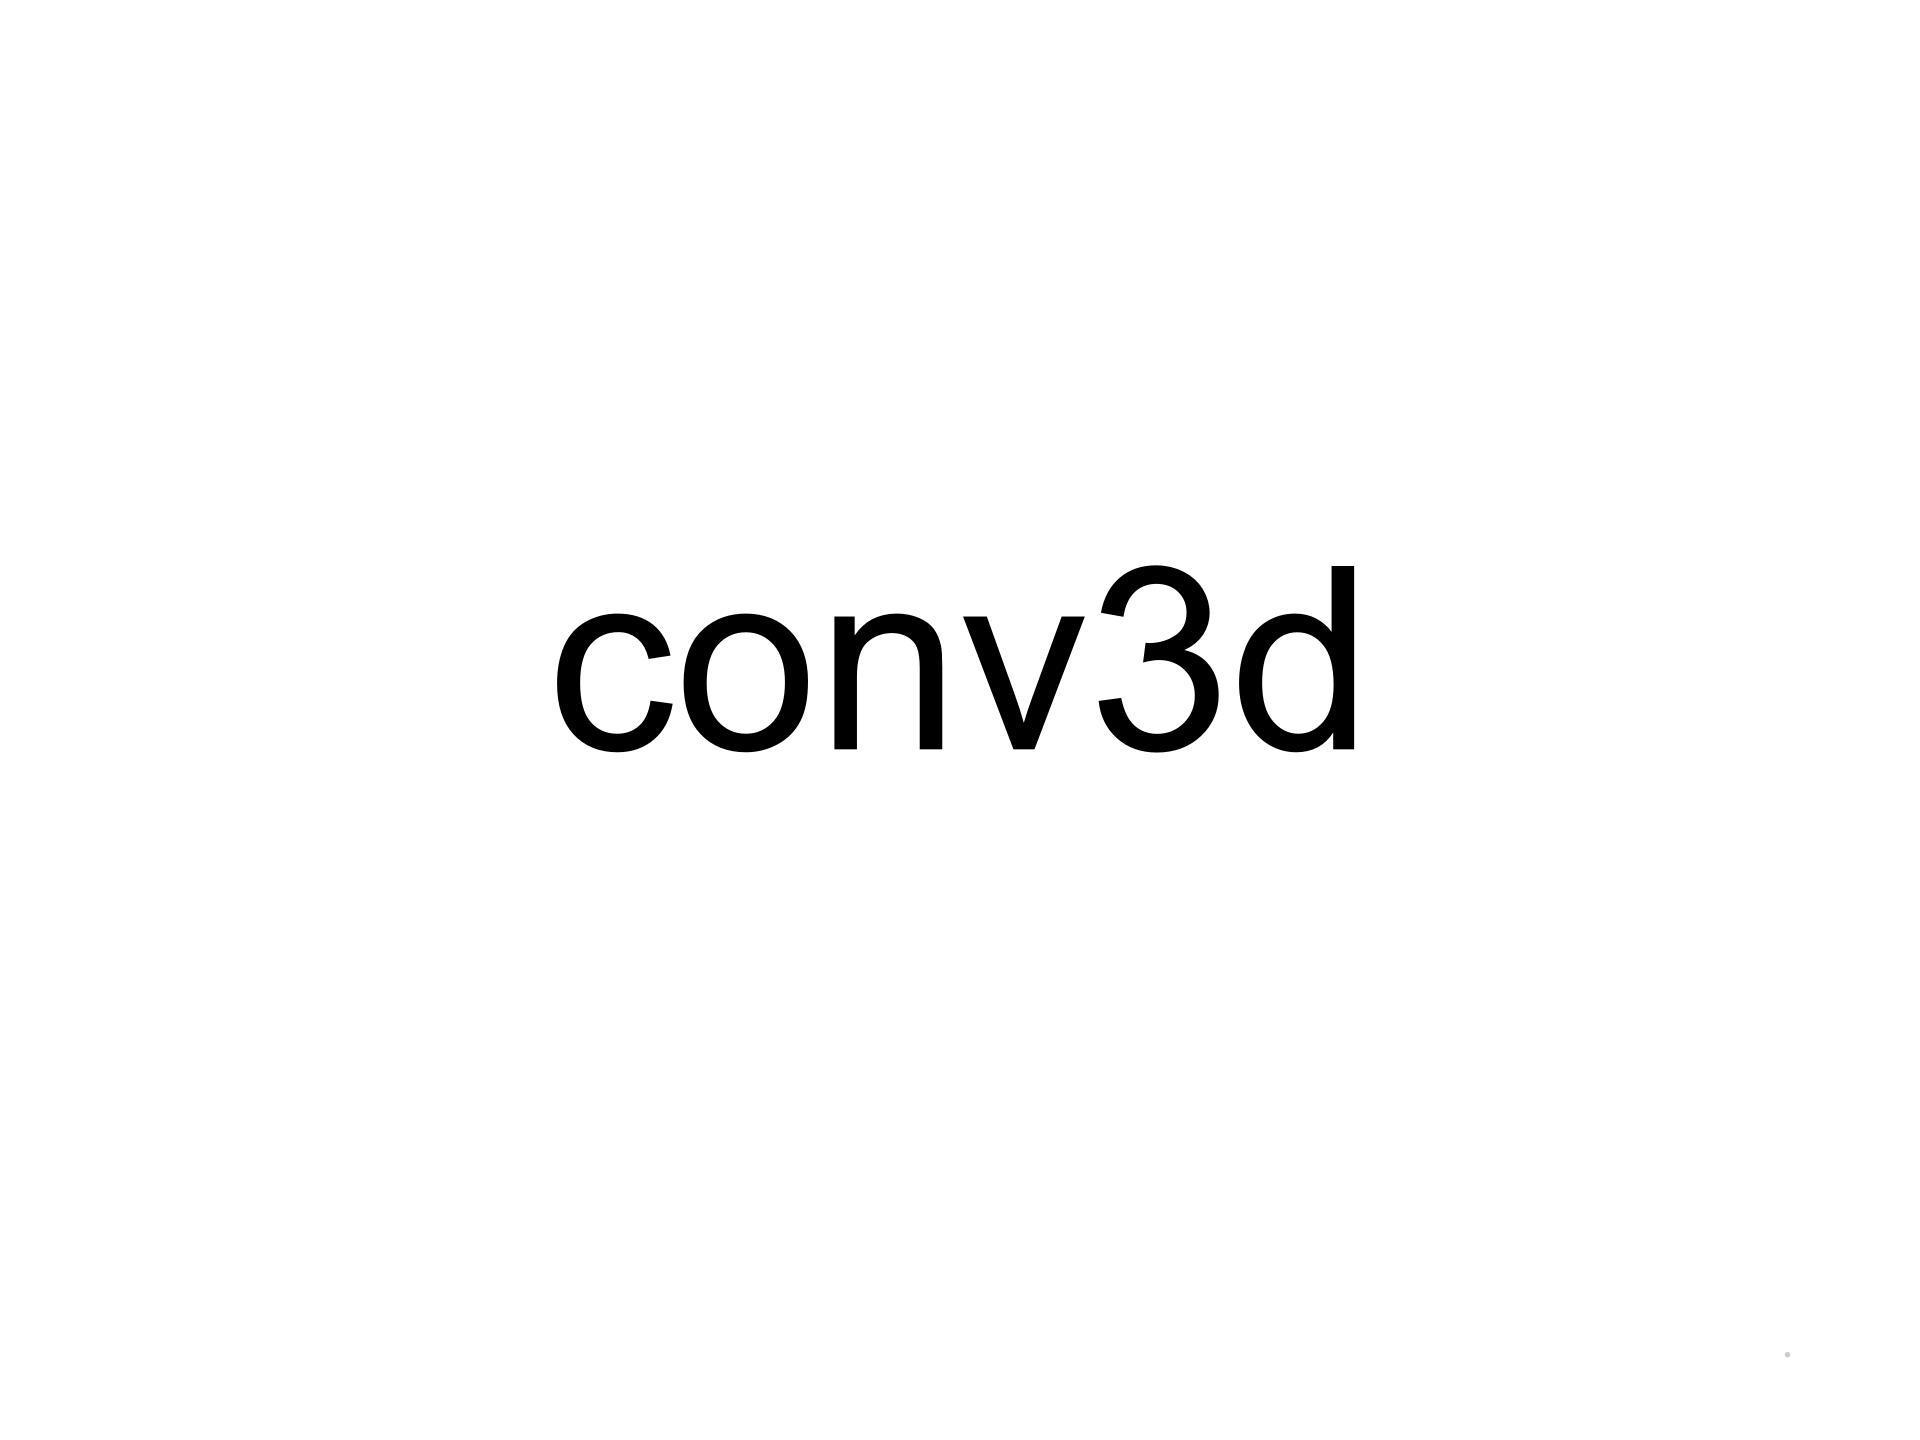 CONV3Dlogo